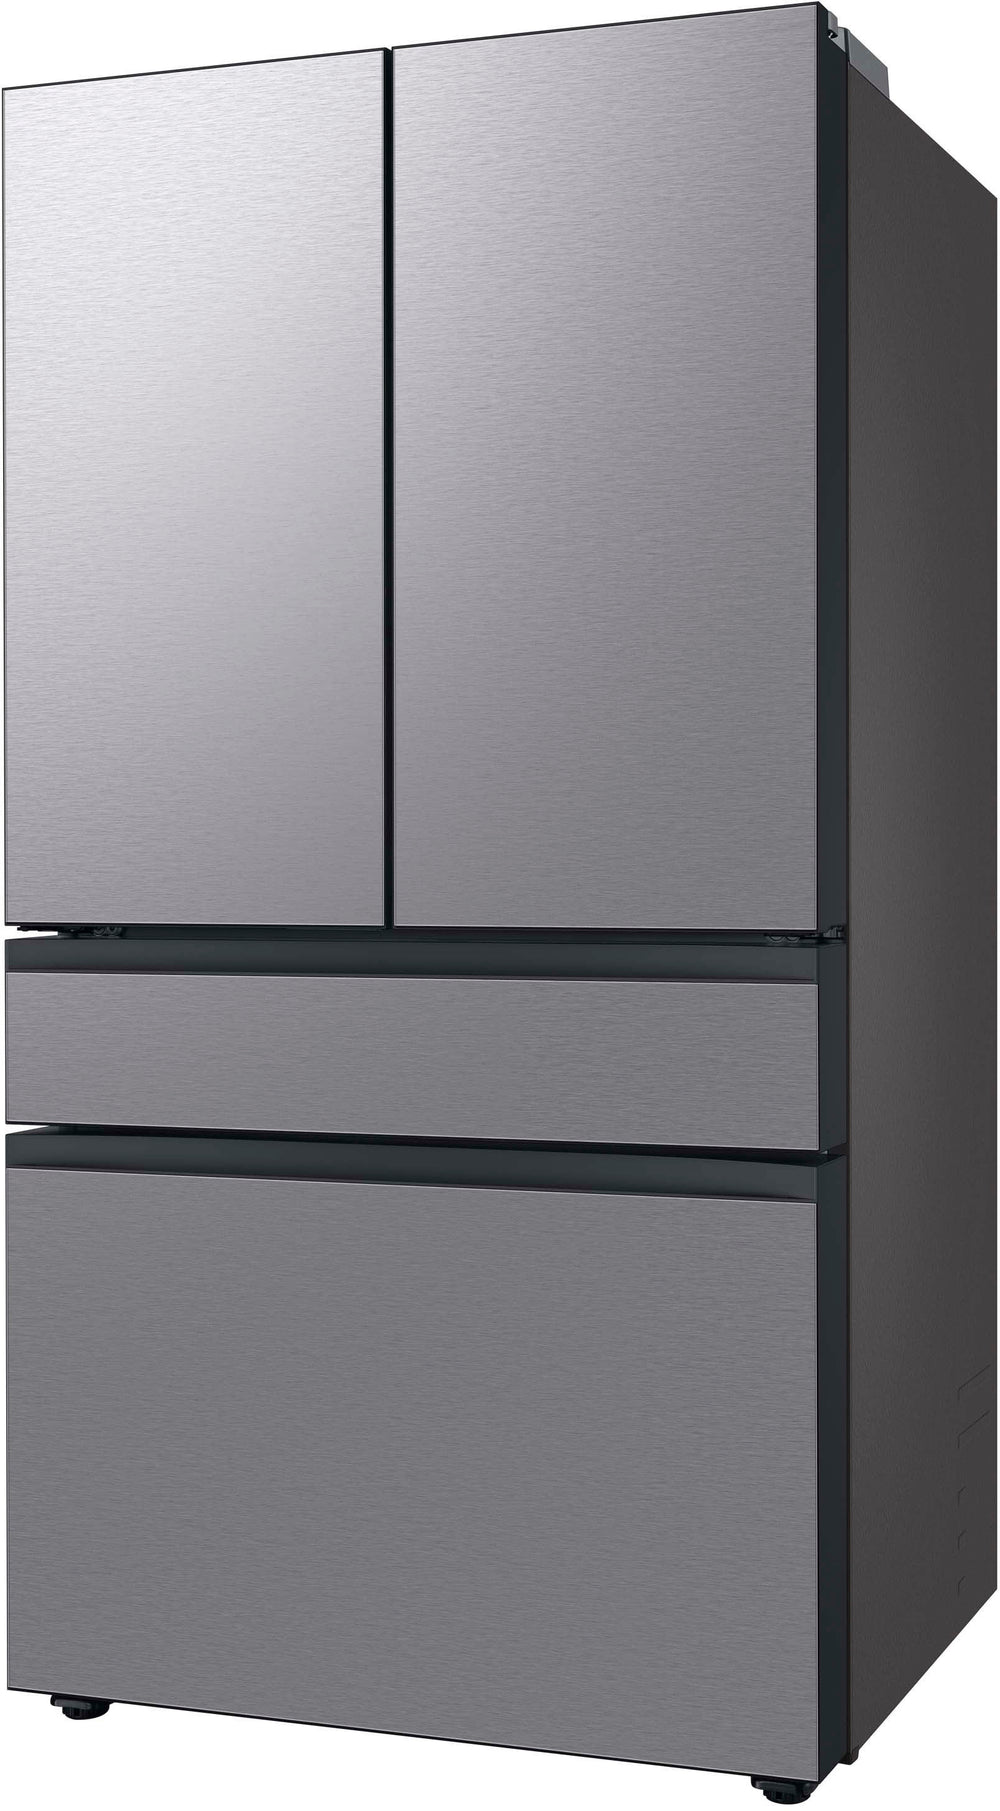 Samsung - Bespoke 29 cu. ft 4-Door French Door Refrigerator with Beverage Center - Stainless steel_1